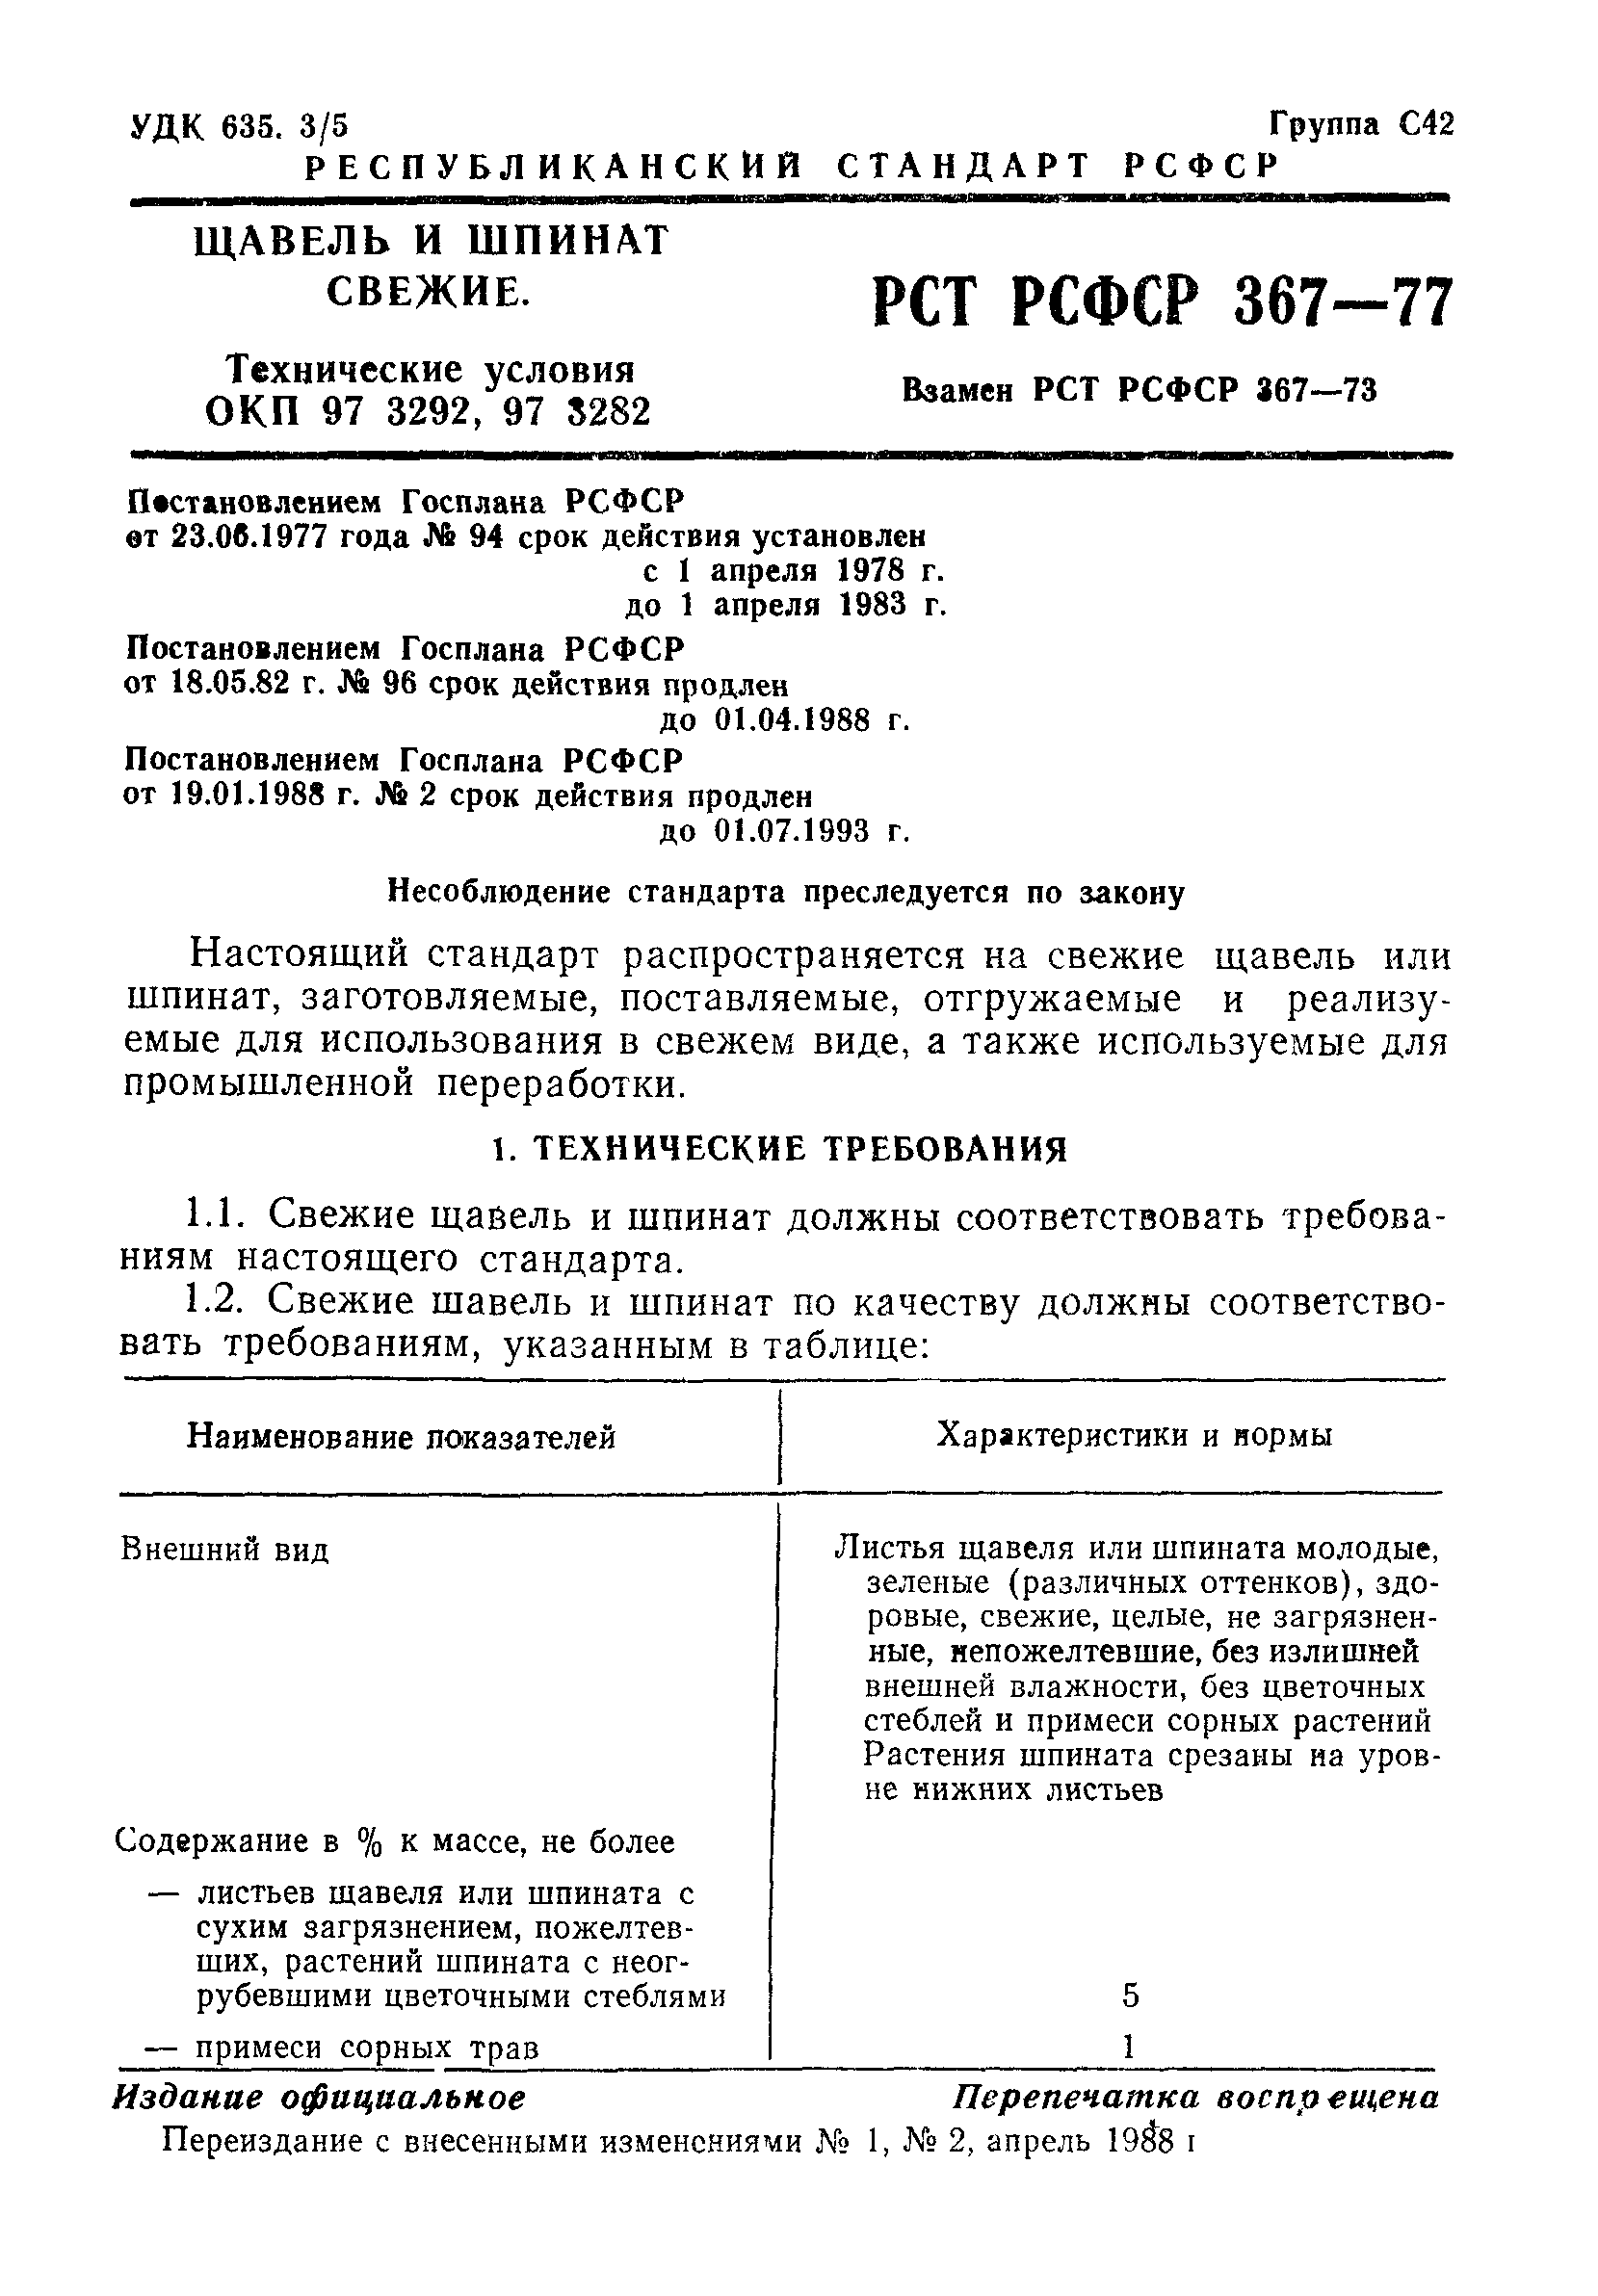 РСТ РСФСР 367-77